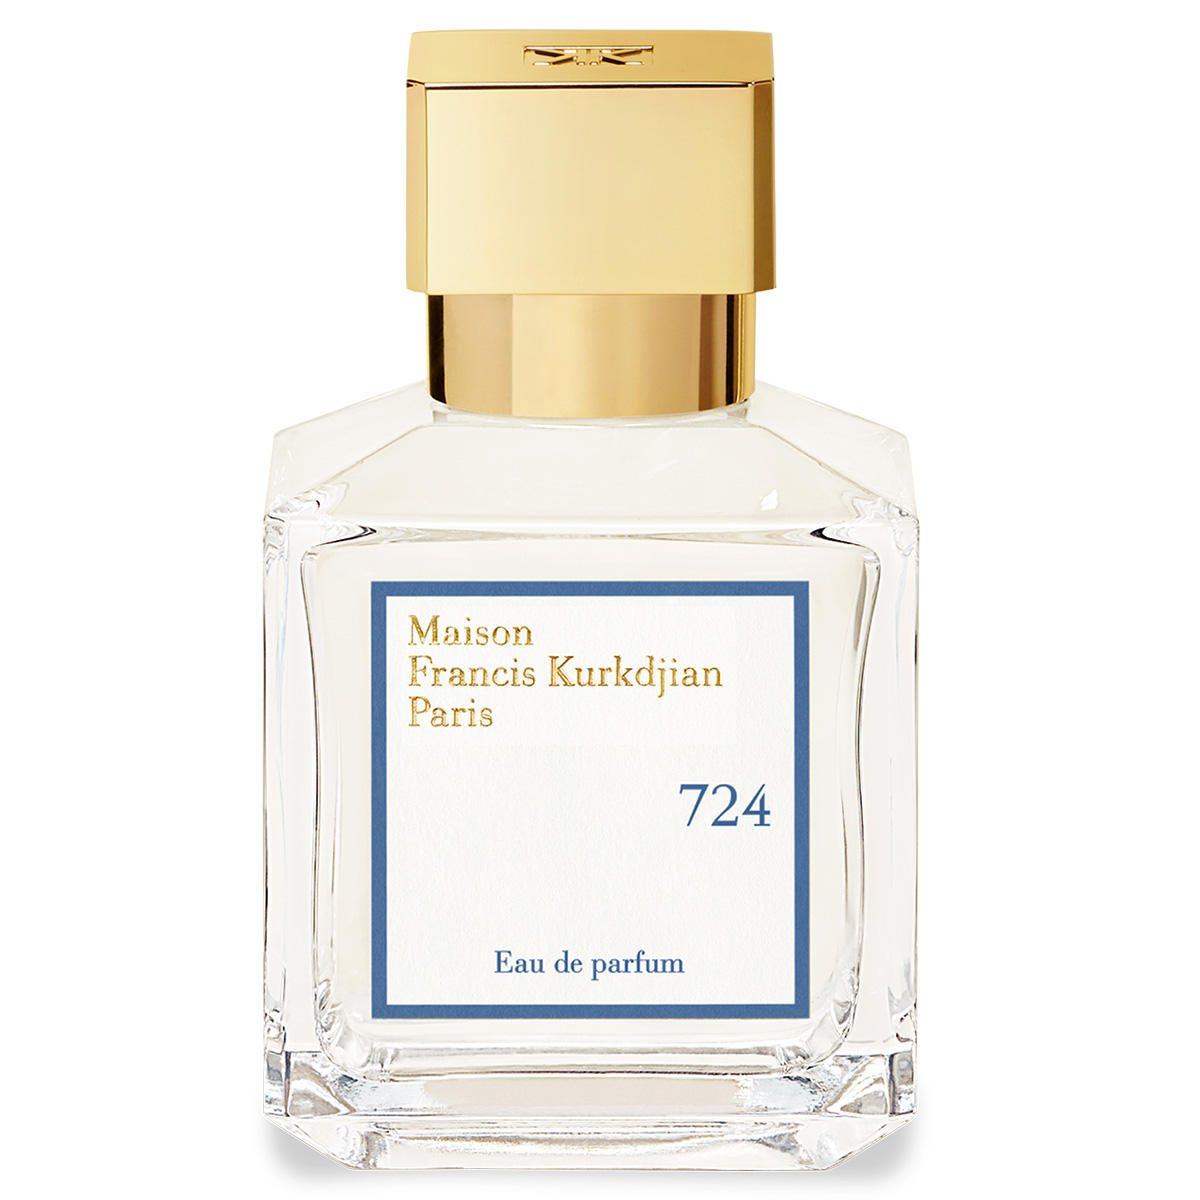 Maison Francis Kurkdjian Paris Fragrances 724 Eau de Parfum 70 ml - 1